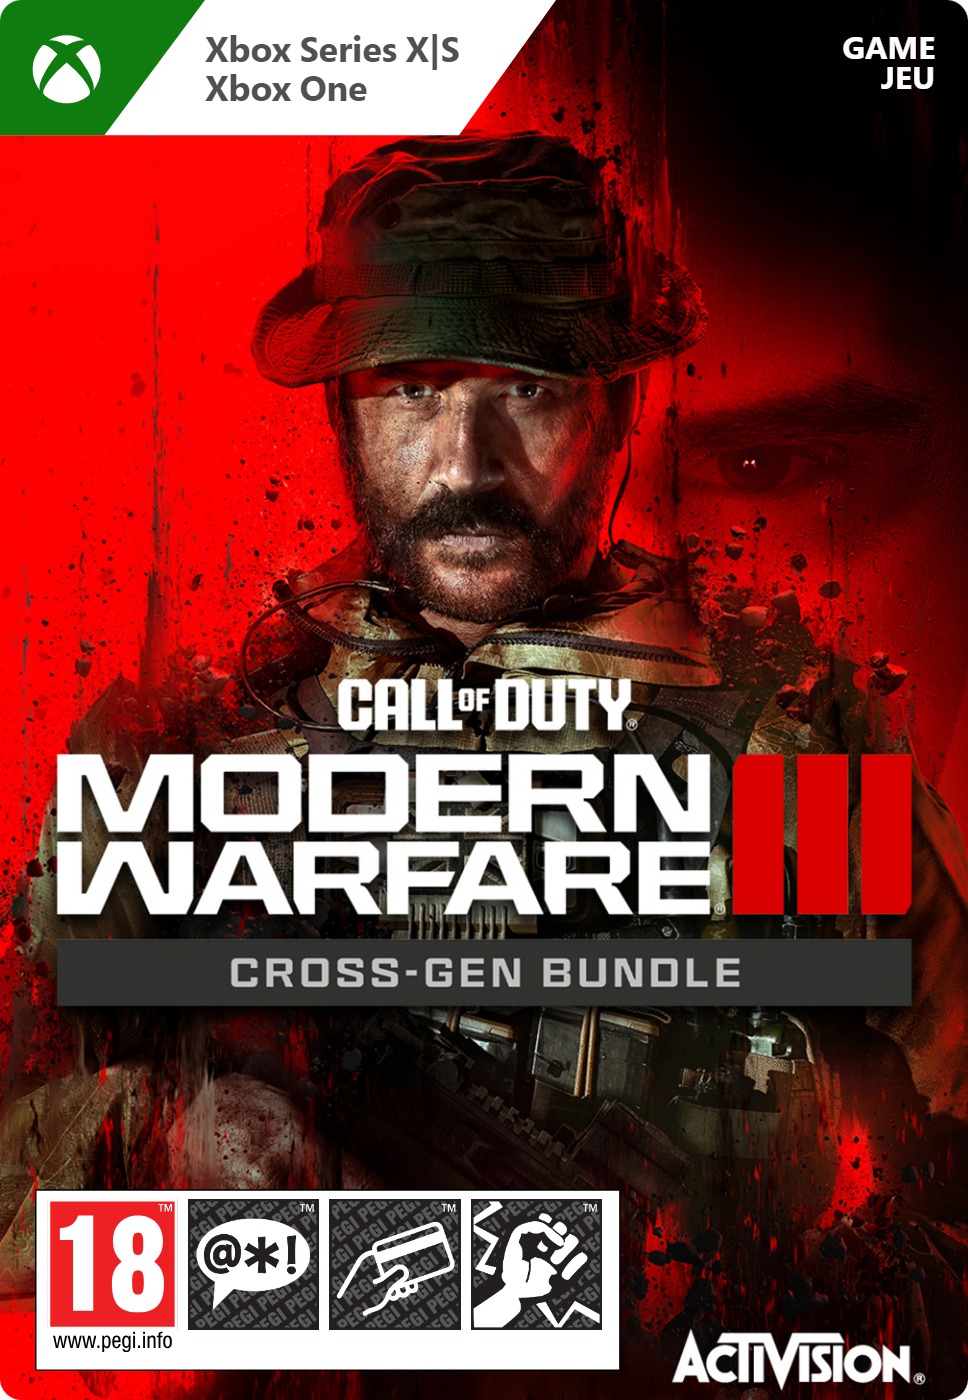 Call of Duty - Modern Warfare III - Cross-Gen Bundle